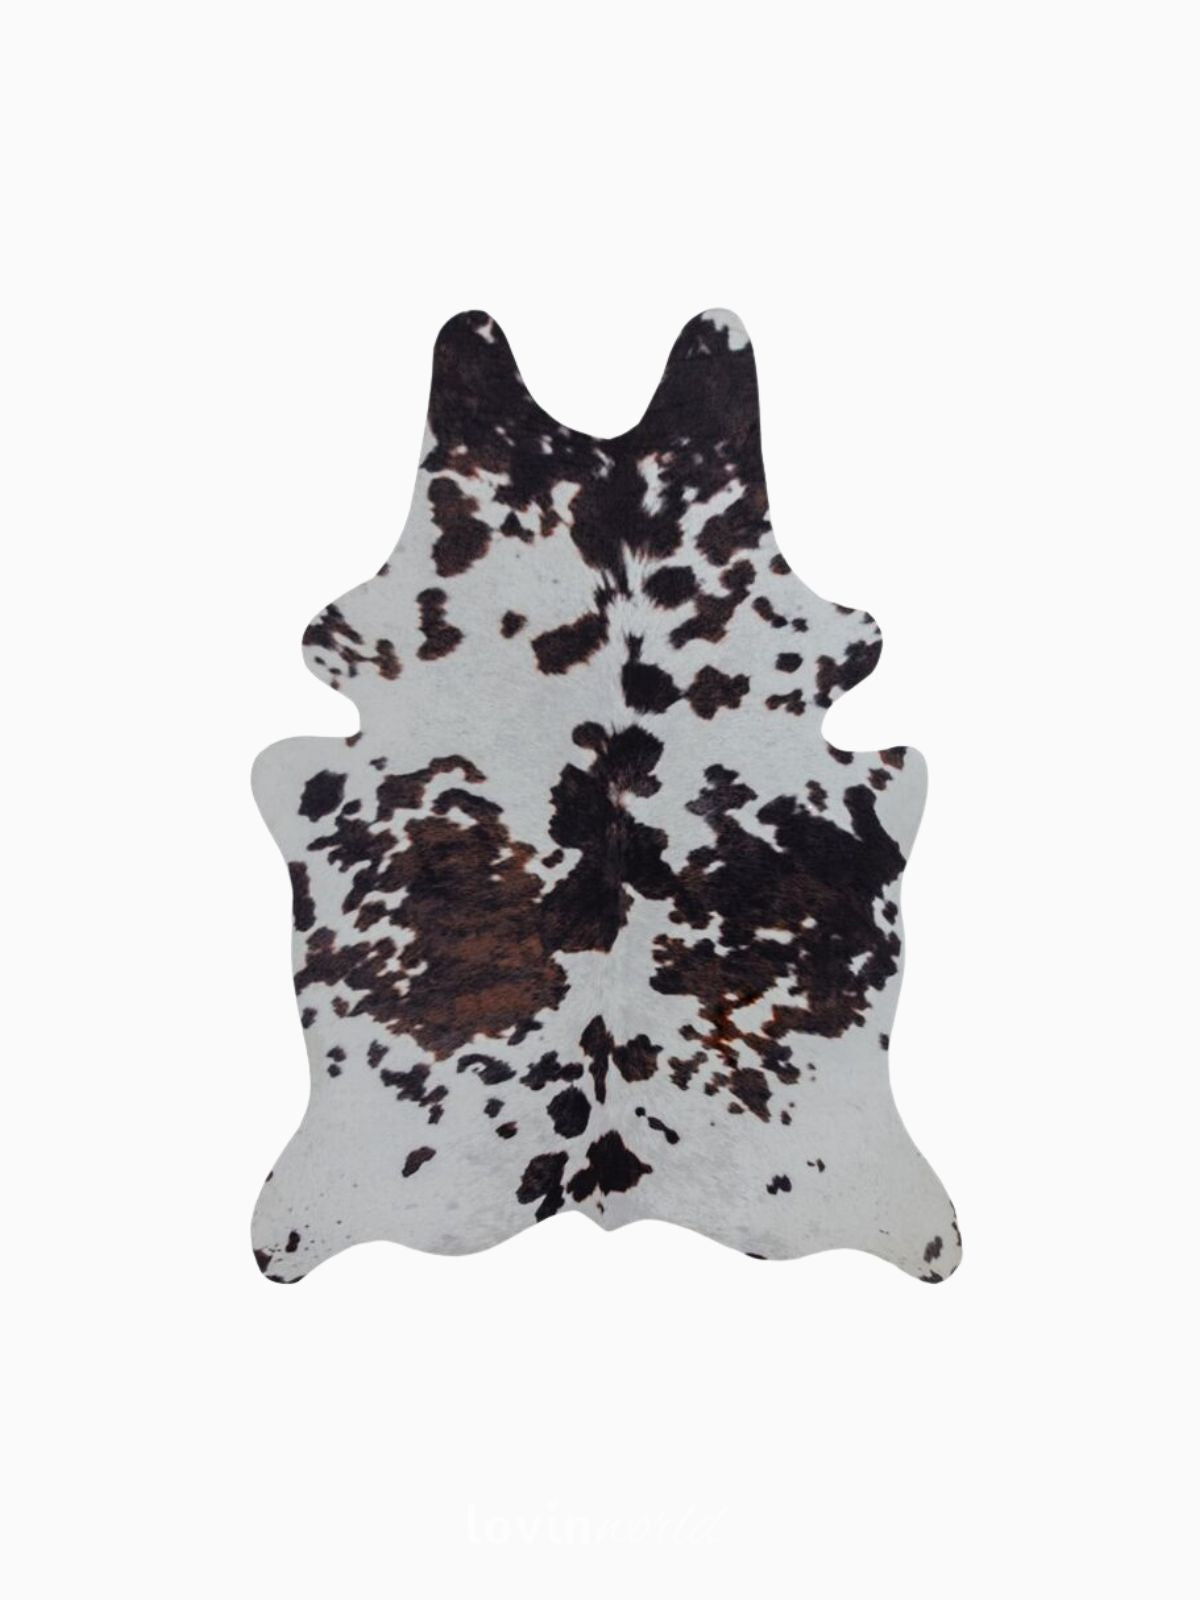 Tappeto animale Cow Print in poliestere, colore bianco e nero 155x195 cm.-1